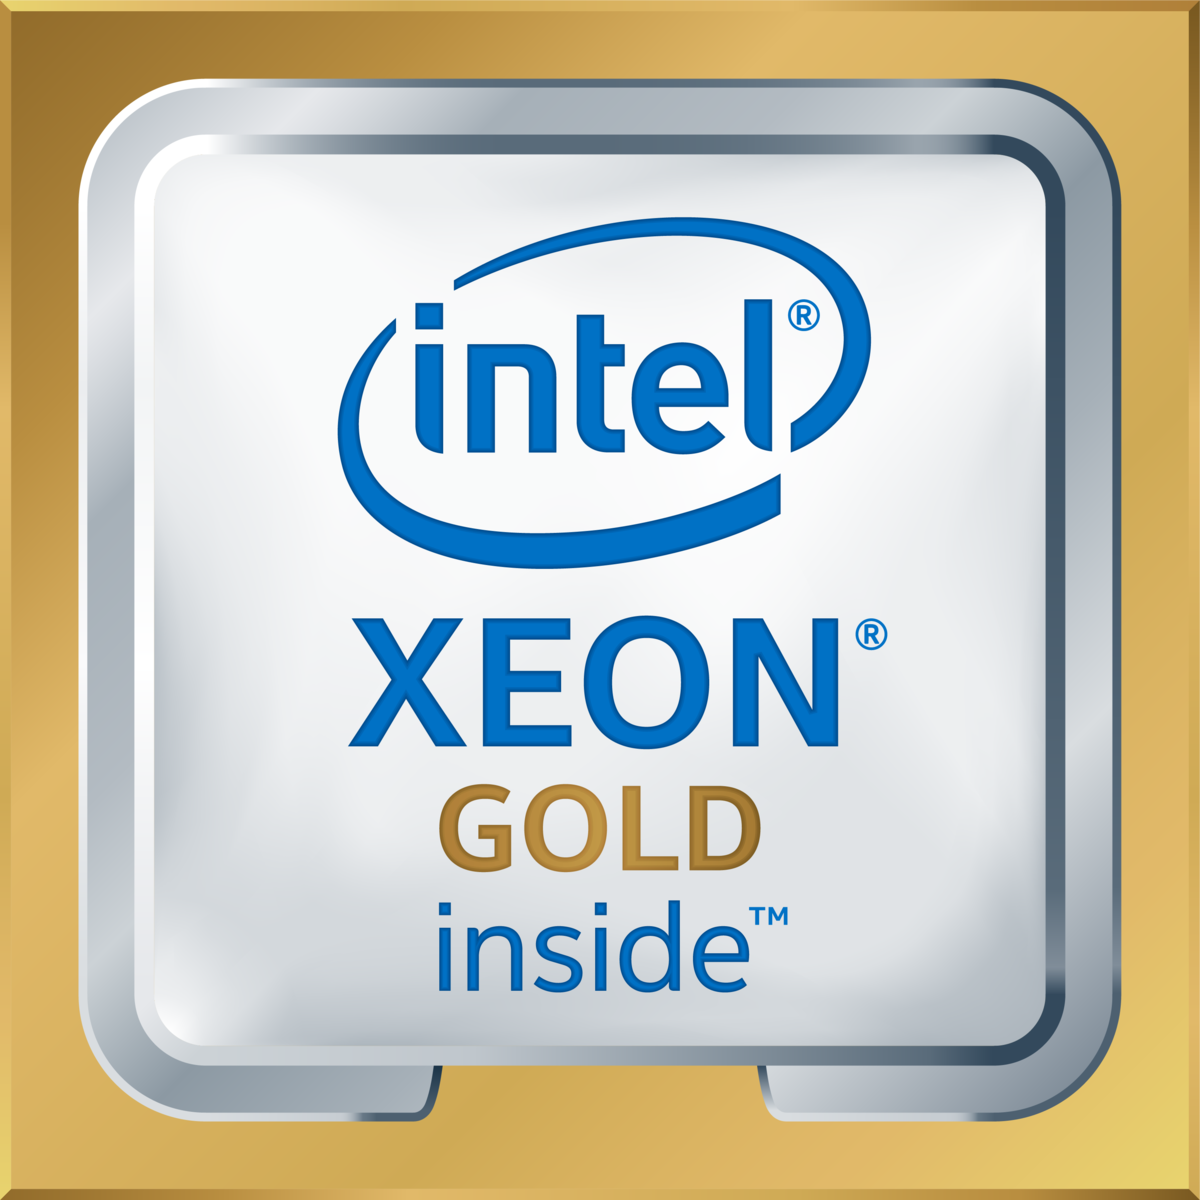 Intel(R) Xeon(R) Gold 6148 CPU @ 2.40GHz's logo